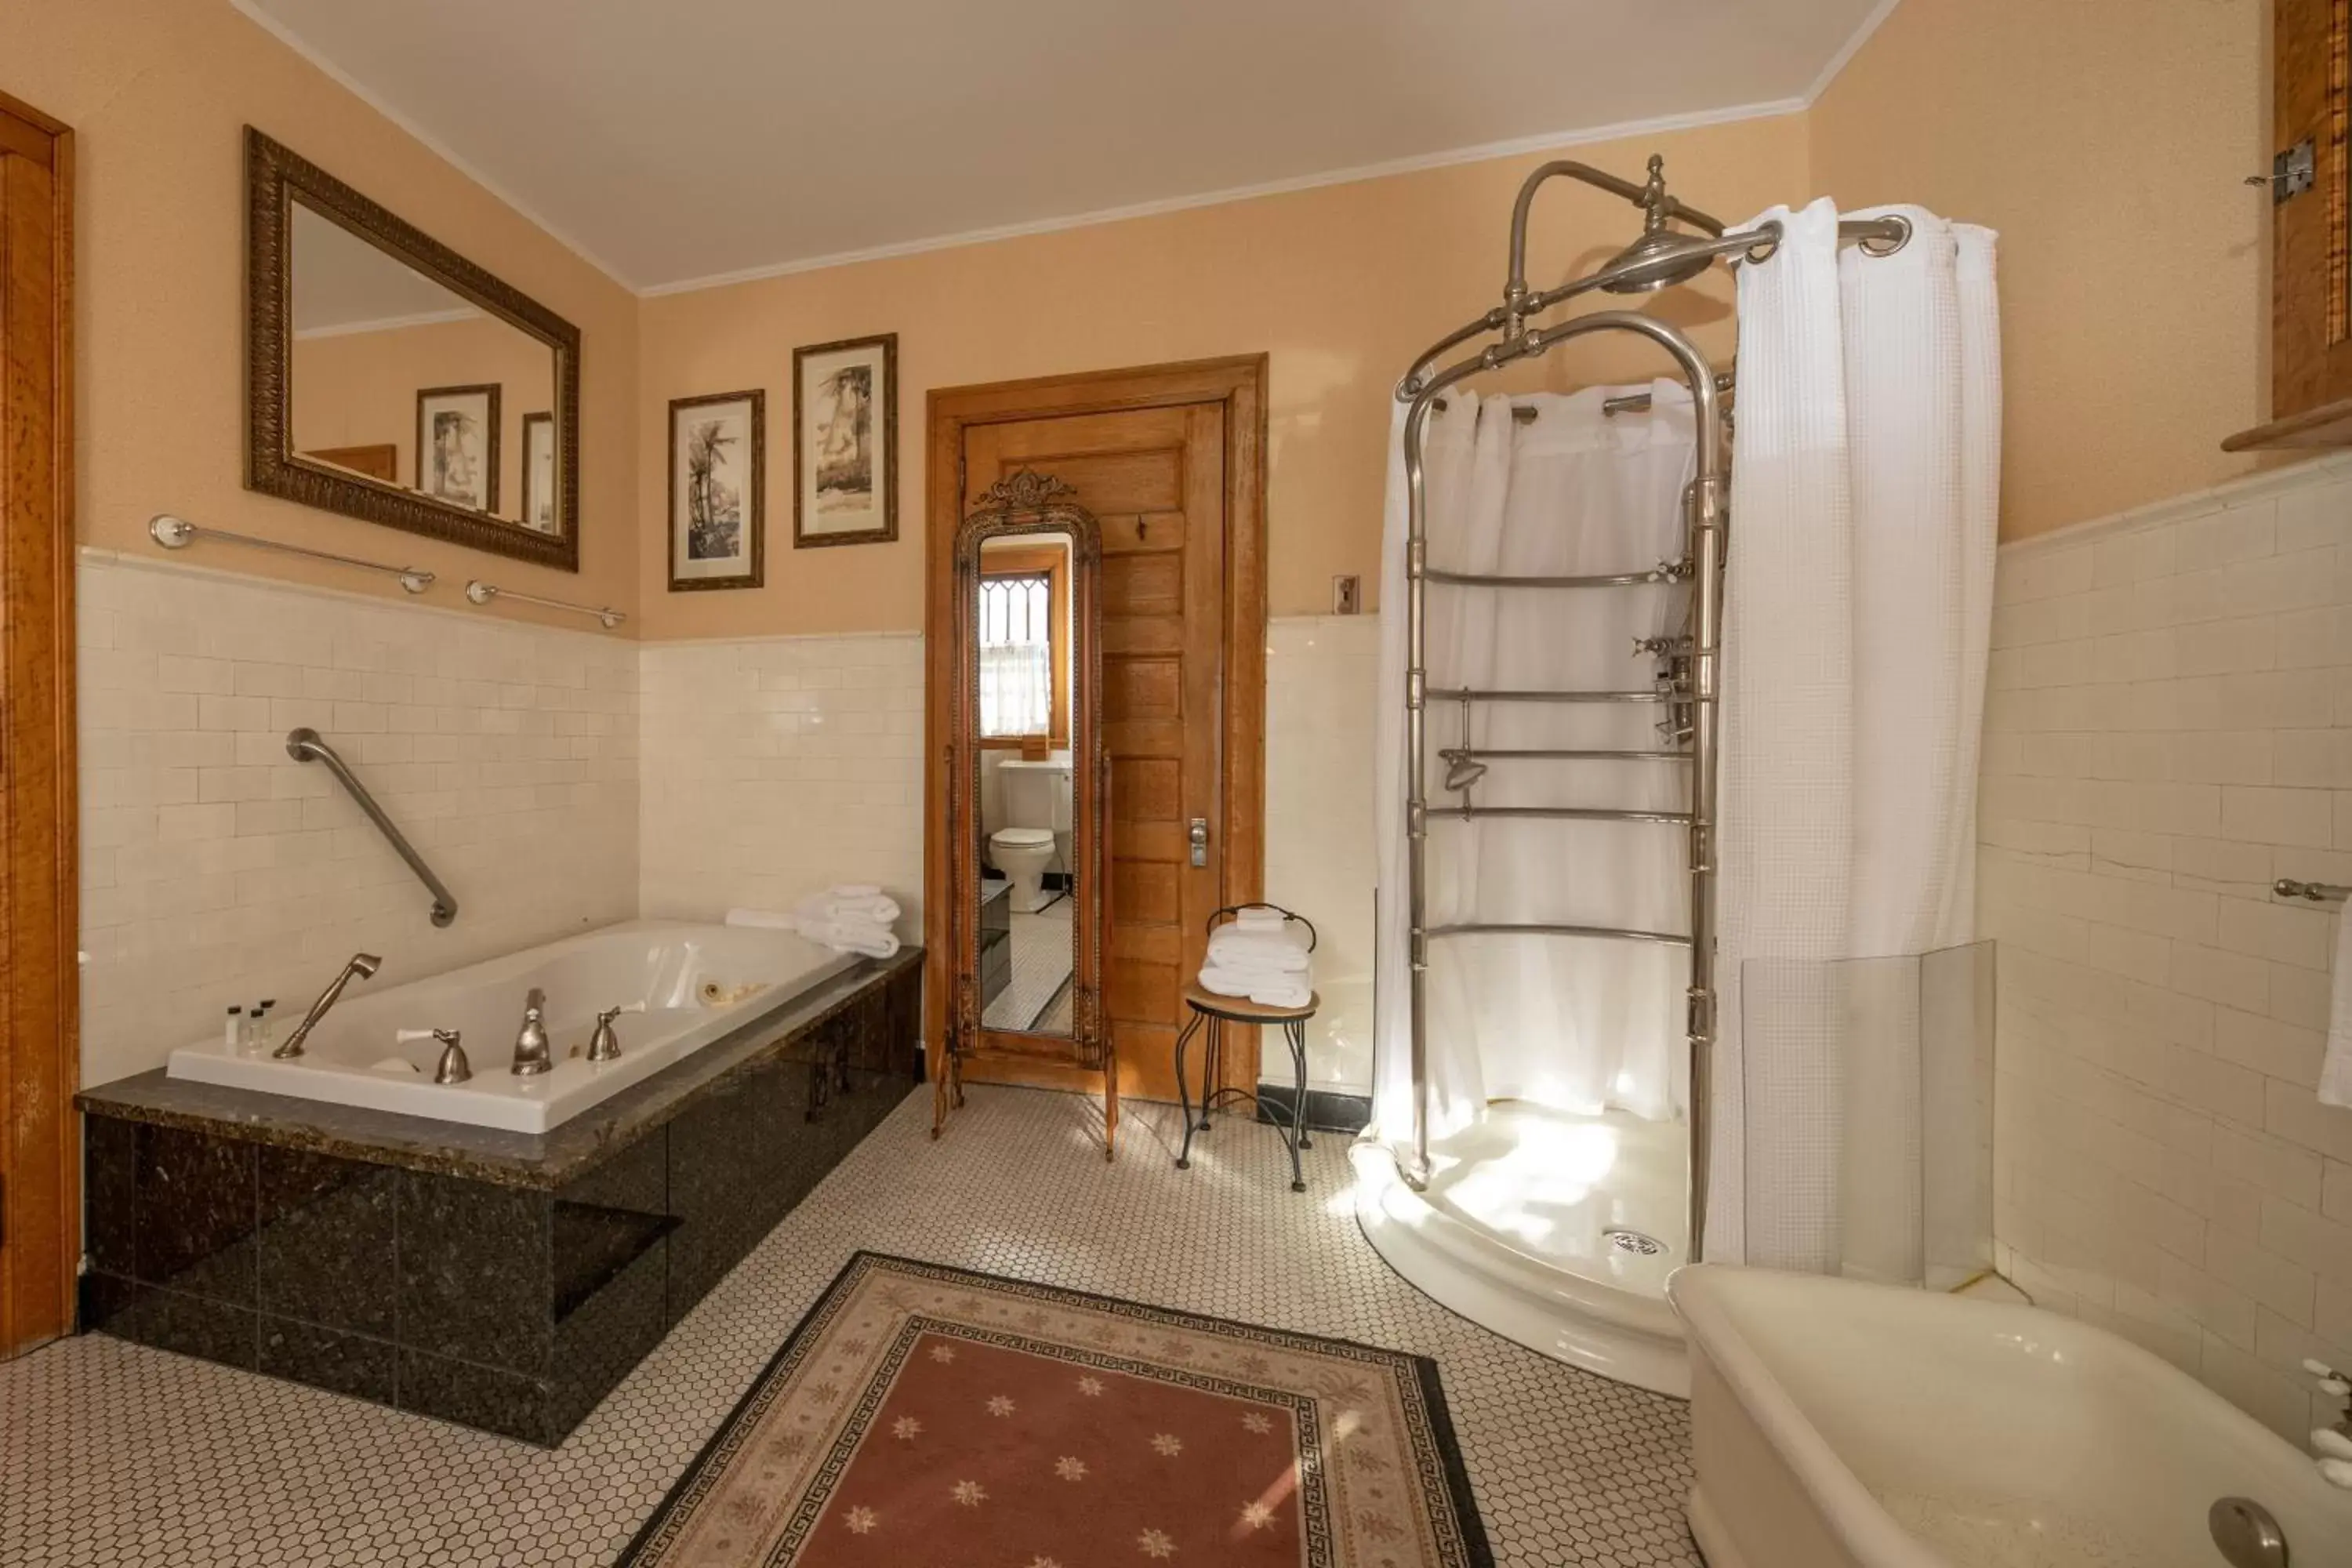 Bathroom in Cartier Mansion